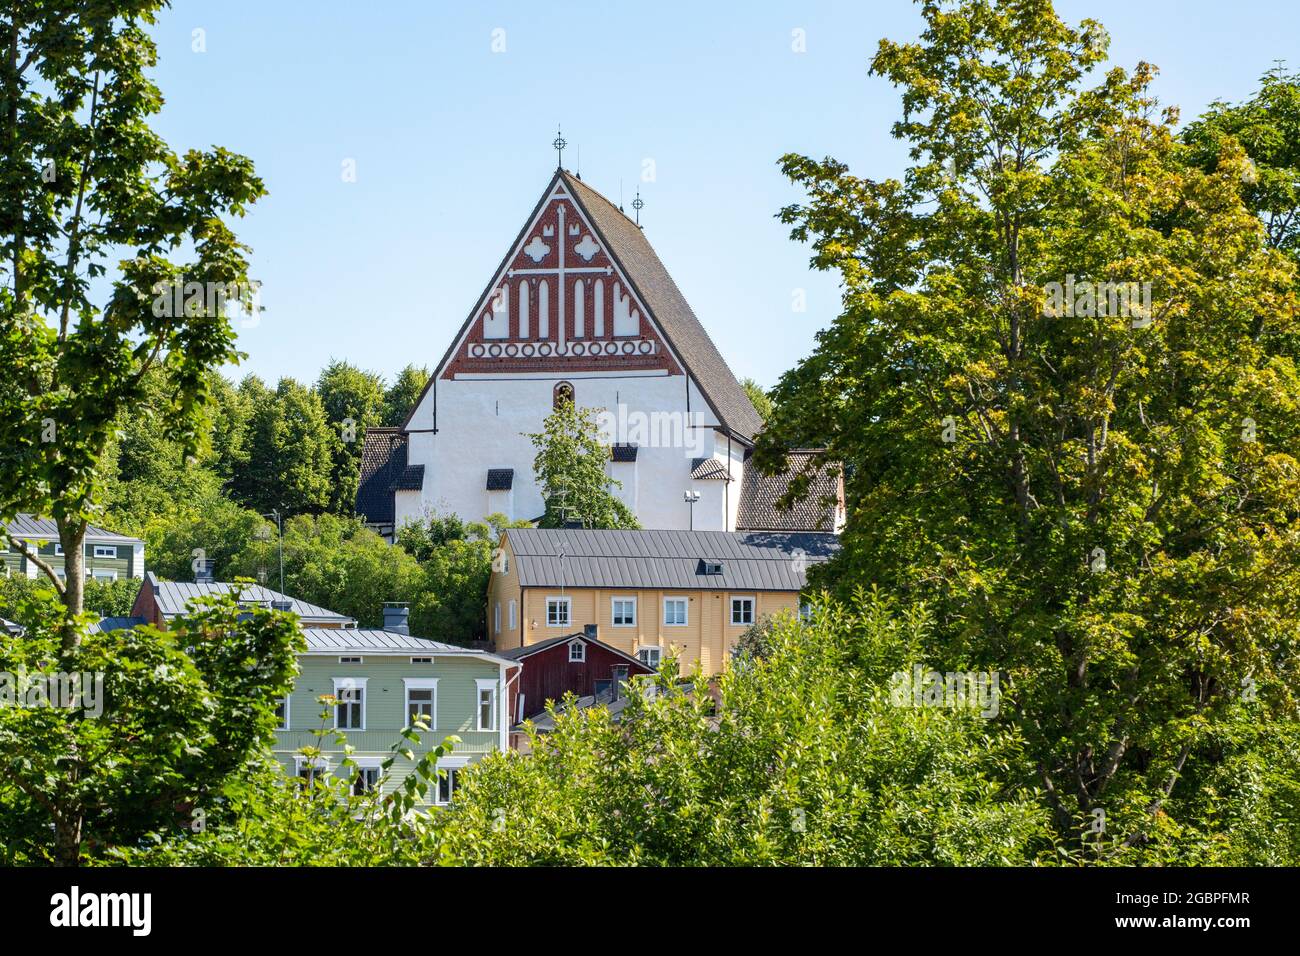 La Cattedrale di Porvoo è un'antica chiesa in pietra, un punto di riferimento visibile in cima a una collina sopra colorate vecchie case in legno della Vecchia Porvoo, Finlandia Foto Stock